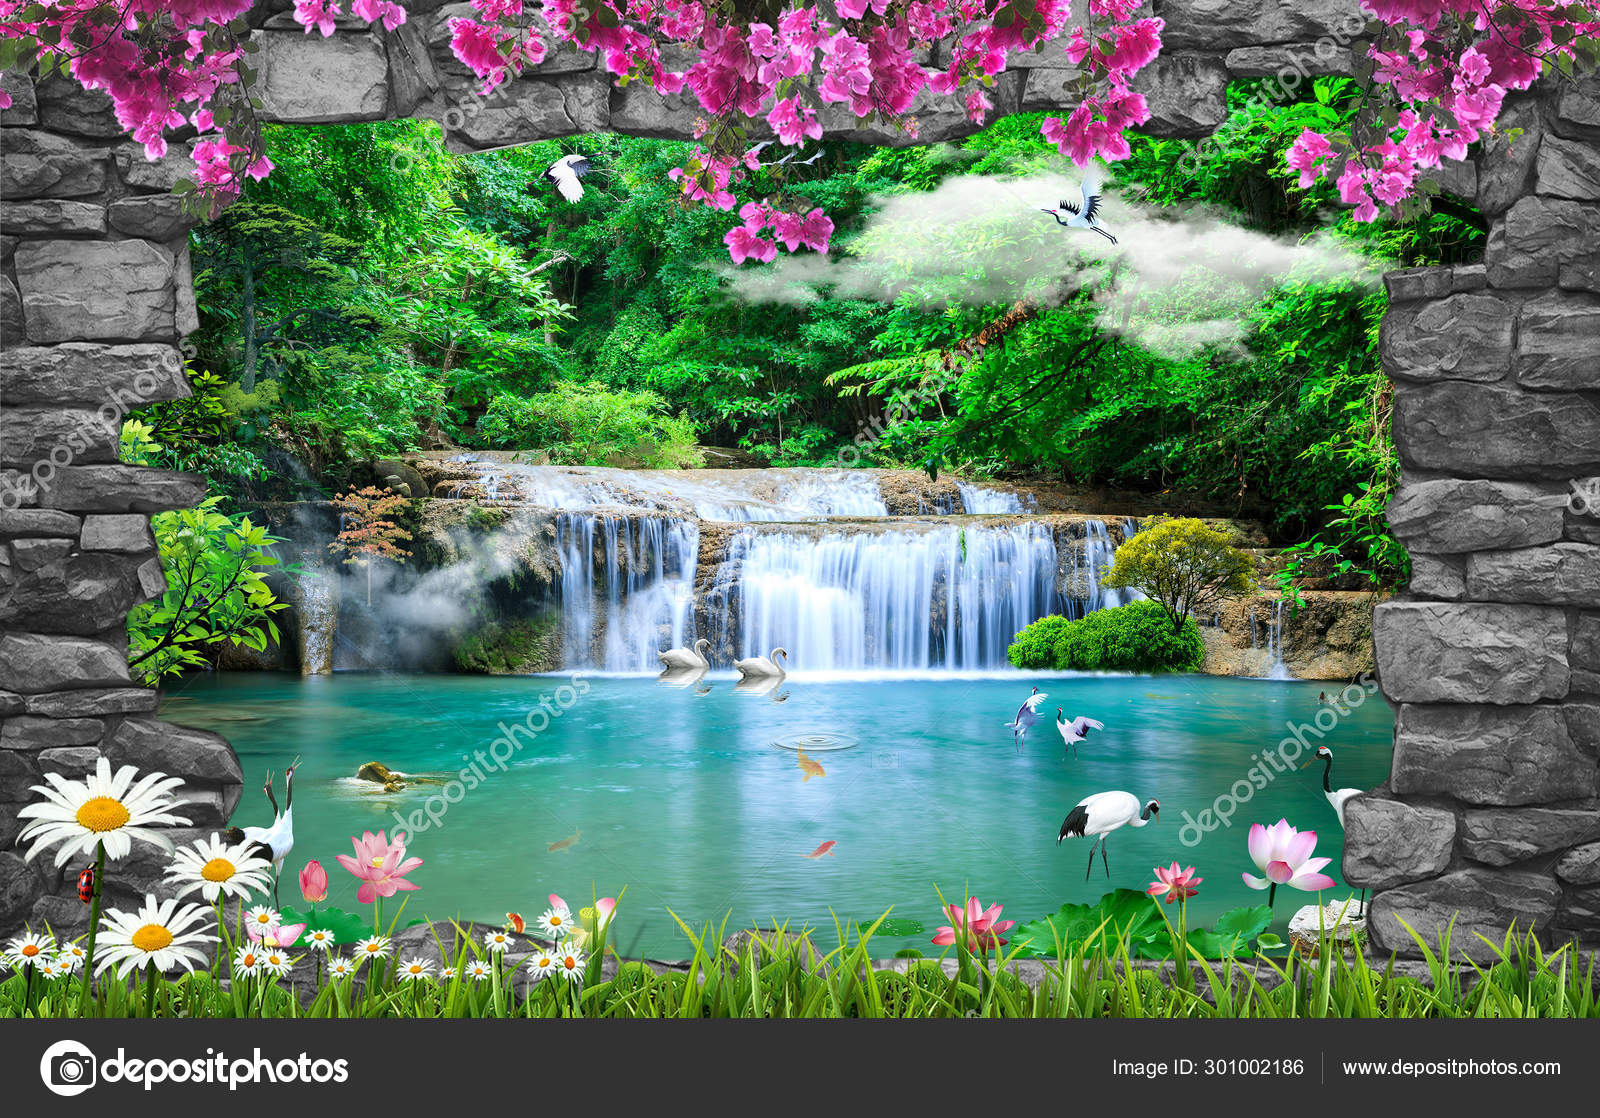 Amazing nature background wallpaper stock photo by zevahir